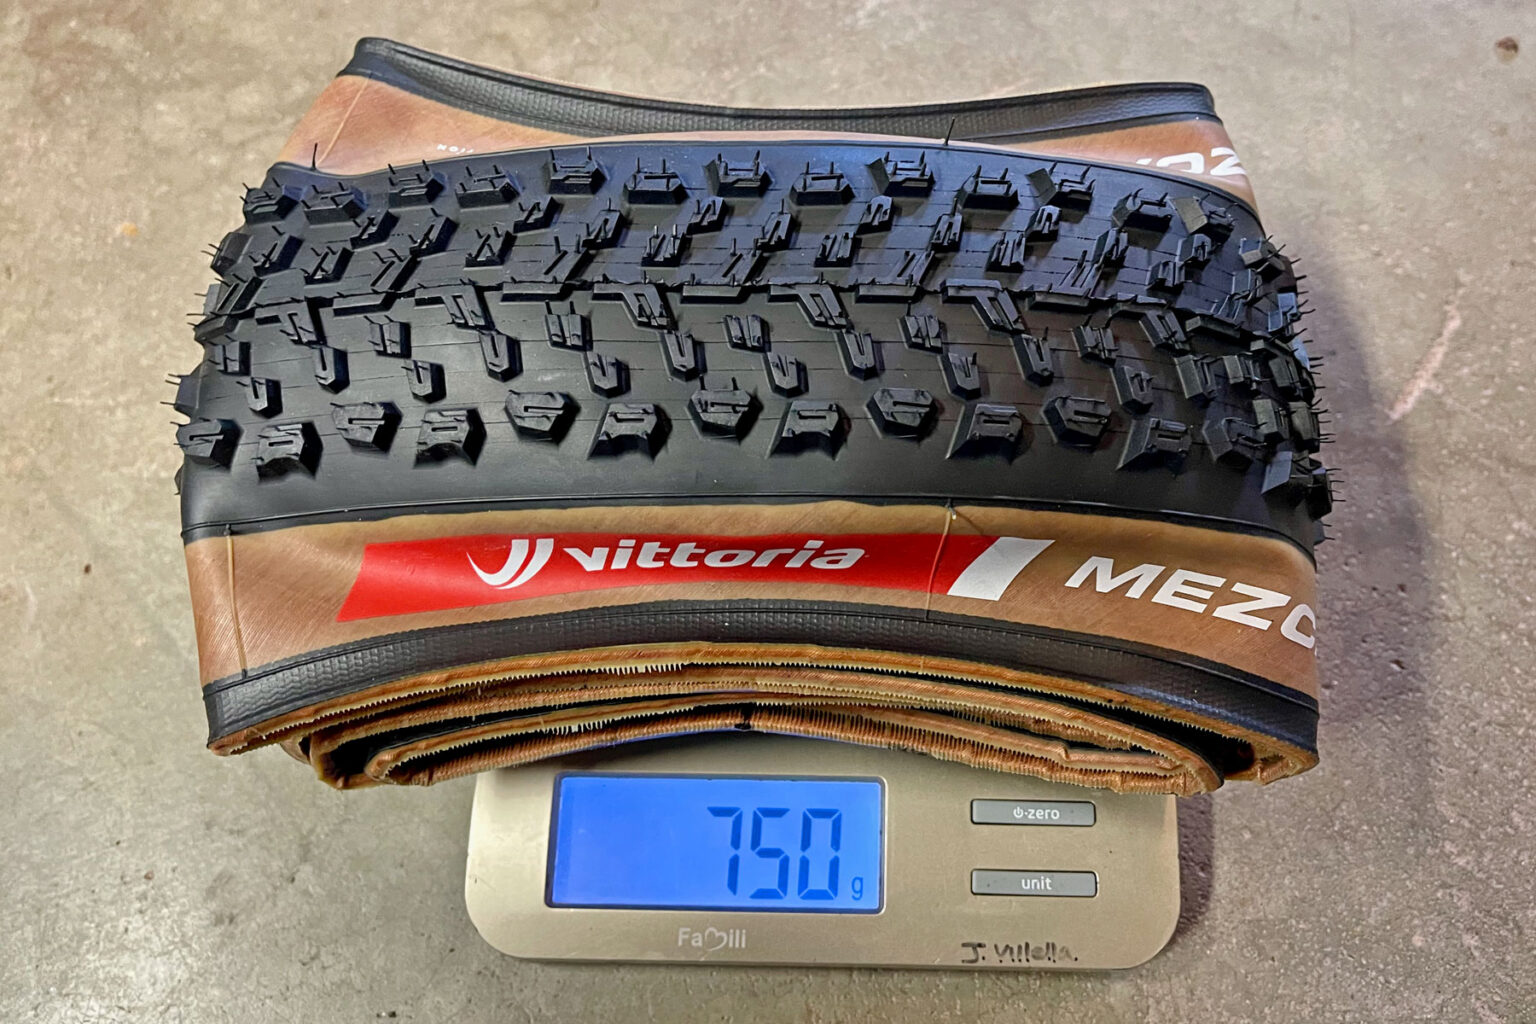 29x2.4" Vittoria Mezcal XC Race cross-country mountain bike tire, 750g actual weight